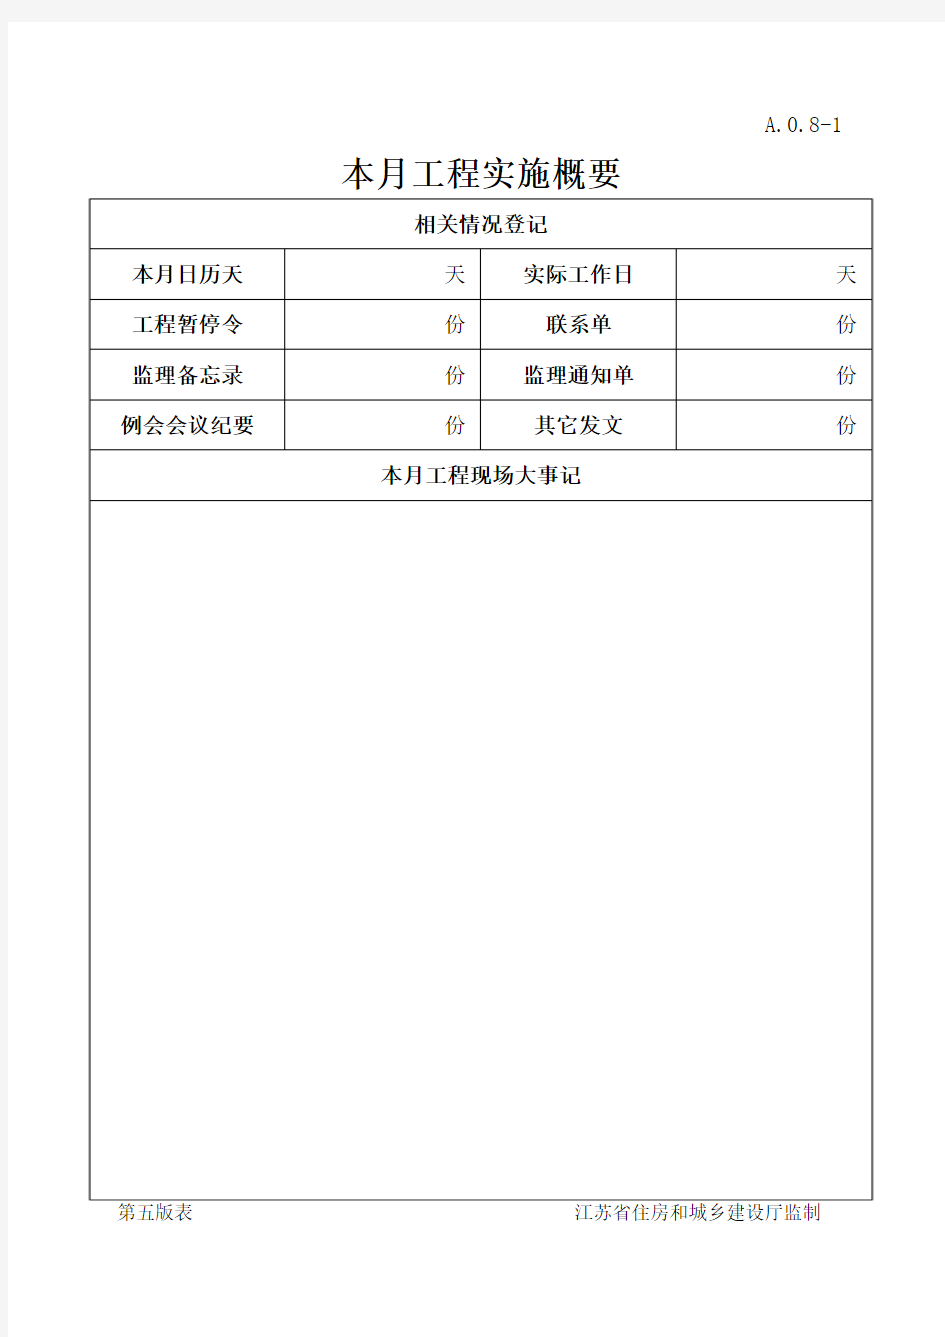 江苏省建设工程监理  现场用表(第五版)监理月报